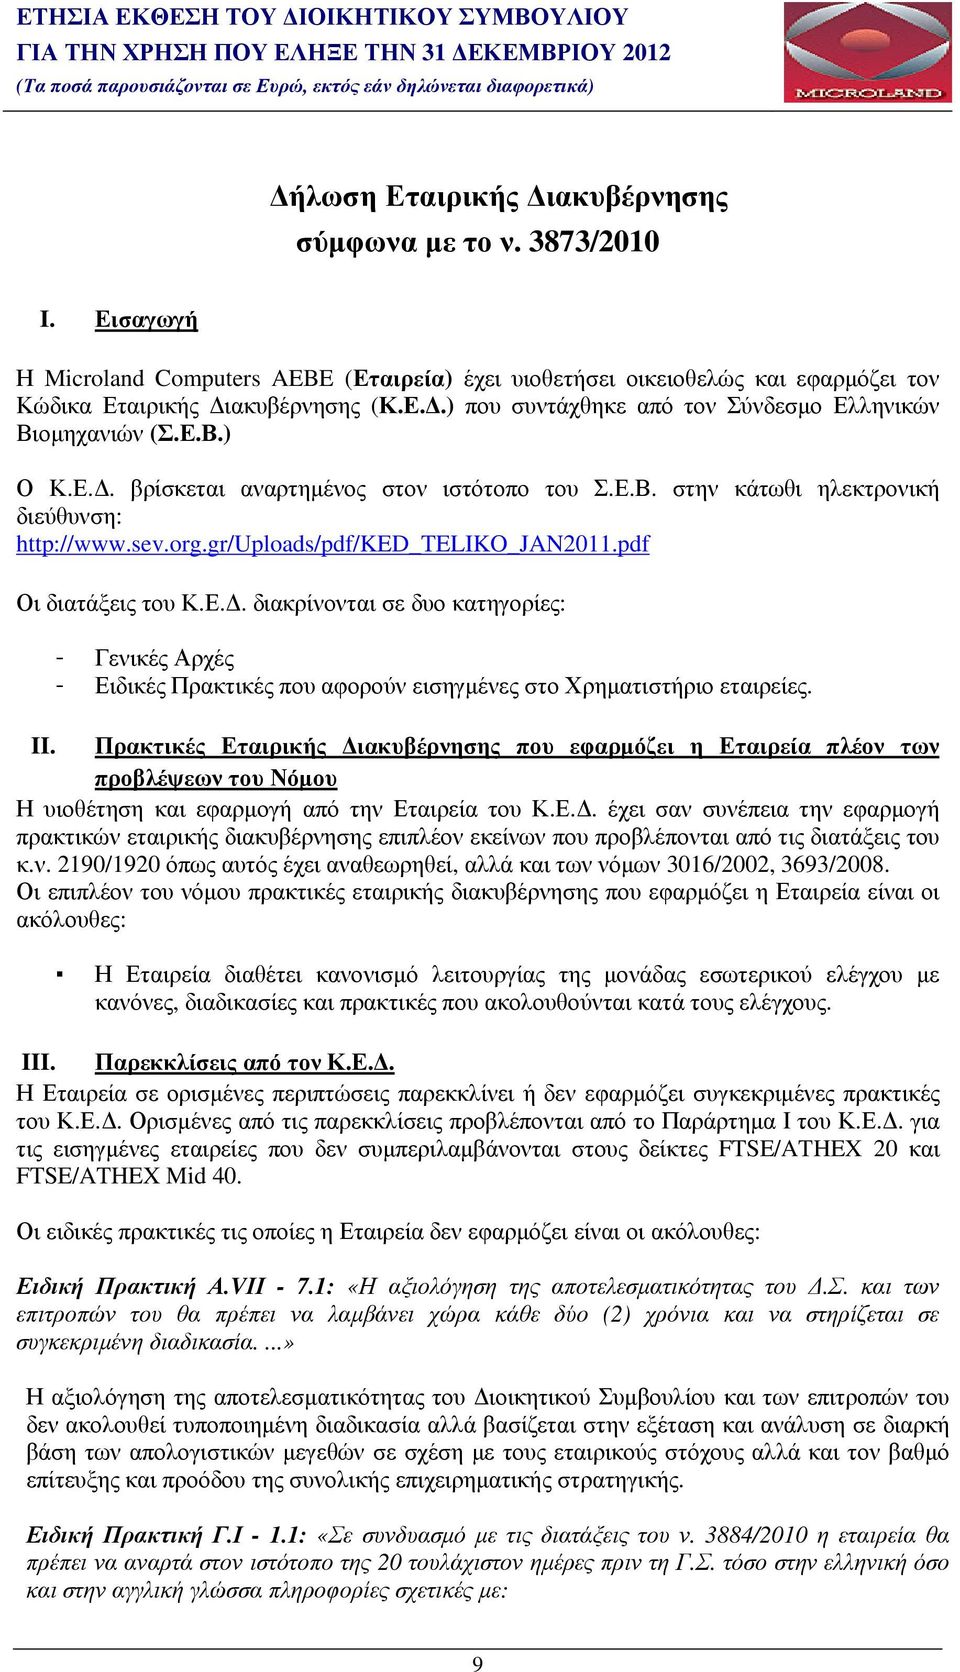 Ε.Β. στην κάτωθι ηλεκτρονική διεύθυνση: http://www.sev.org.gr/uploads/pdf/ked_teliko_jan2011.pdf Οι διατάξεις του Κ.Ε.. διακρίνονται σε δυο κατηγορίες: Γενικές Αρχές Ειδικές Πρακτικές που αφορούν εισηγµένες στο Χρηµατιστήριο εταιρείες.